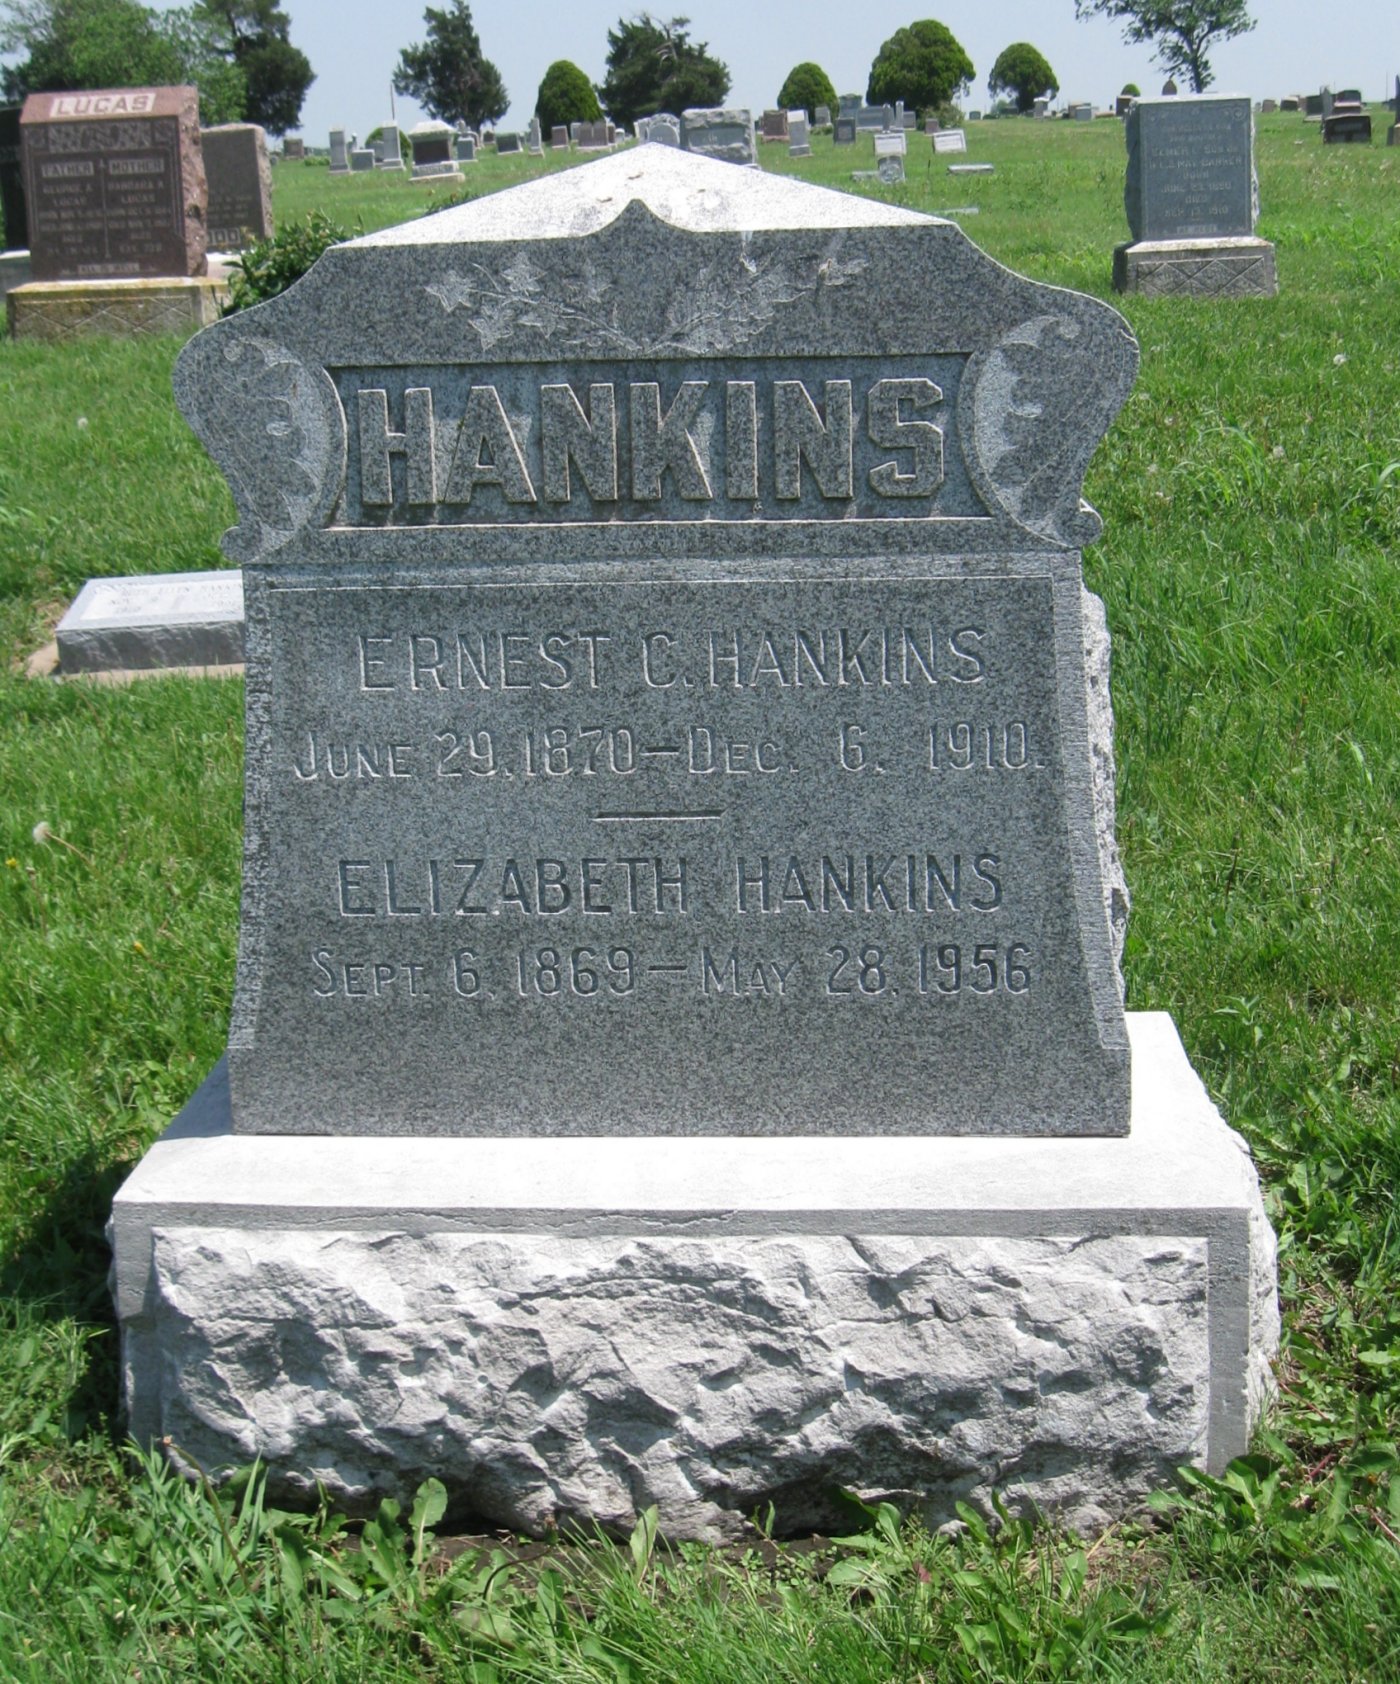 Elizabeth F. Brooks Hankins (1869-1956)